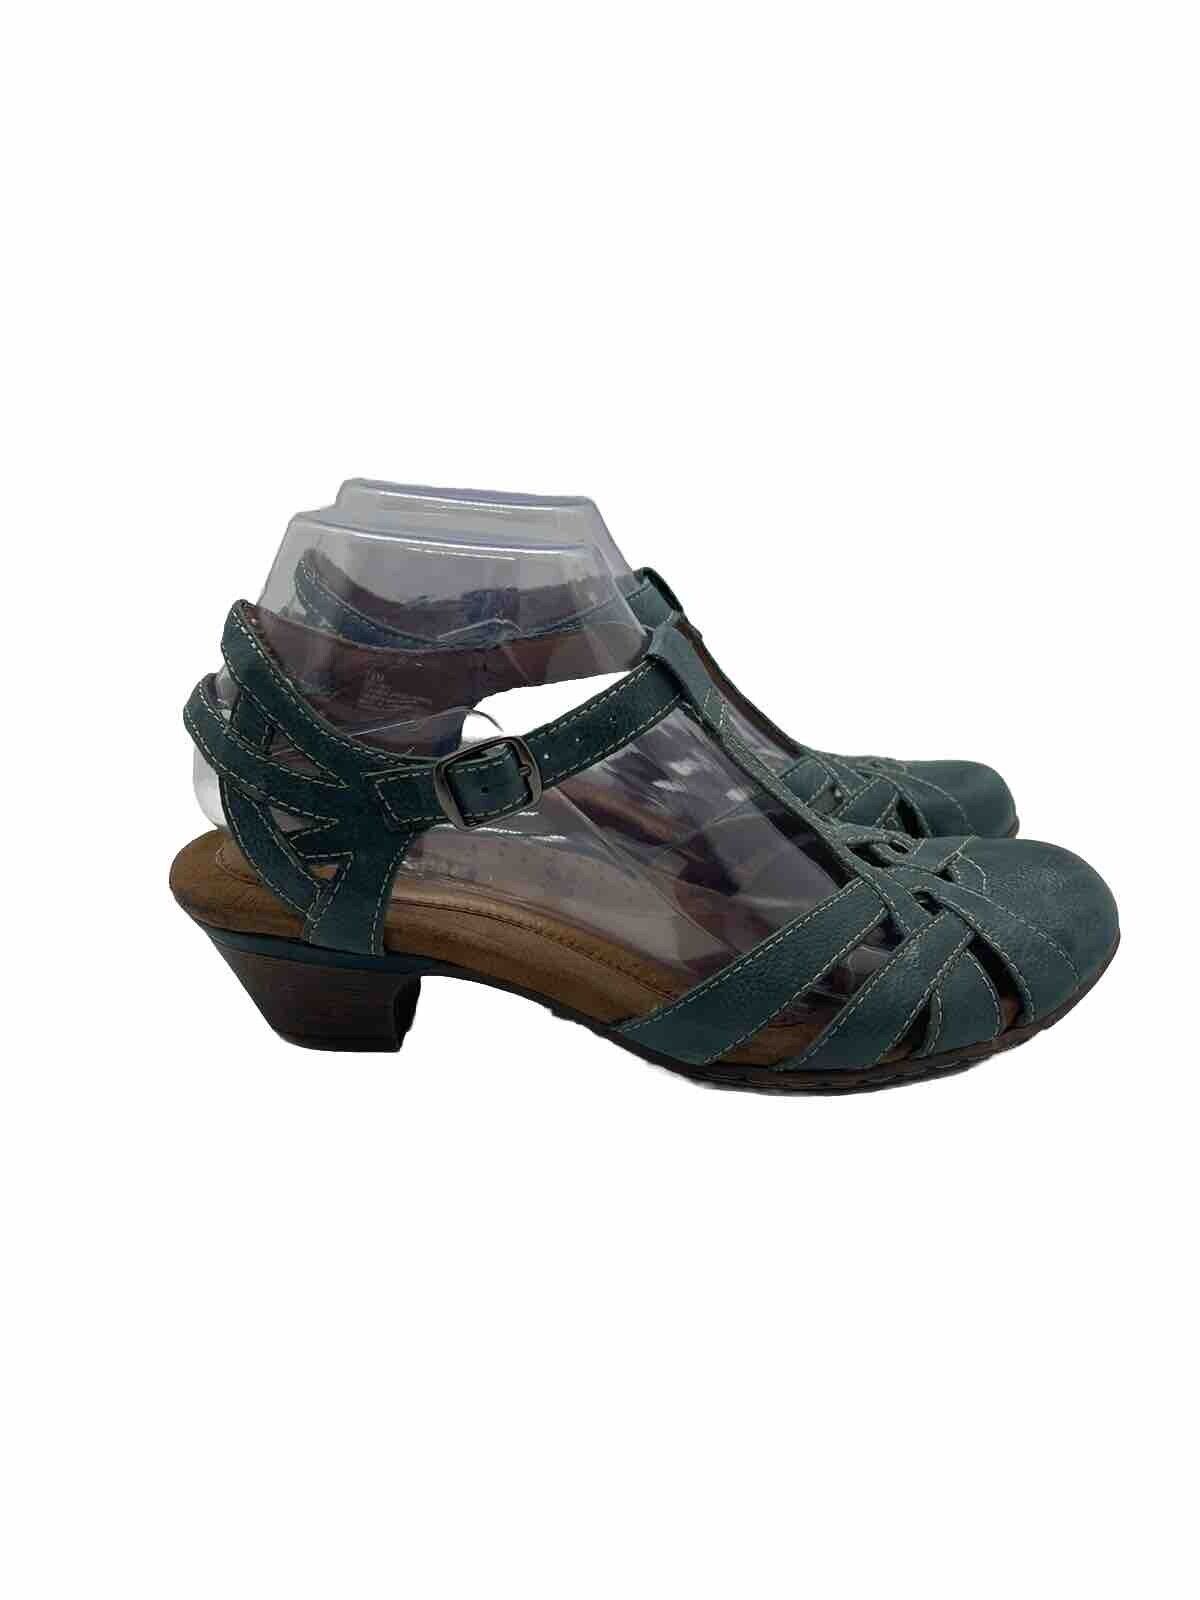 Cobb Hill by New Balance Aubrey Women Blue Cut Out T Strap Sandals Sz 7.5M Heels